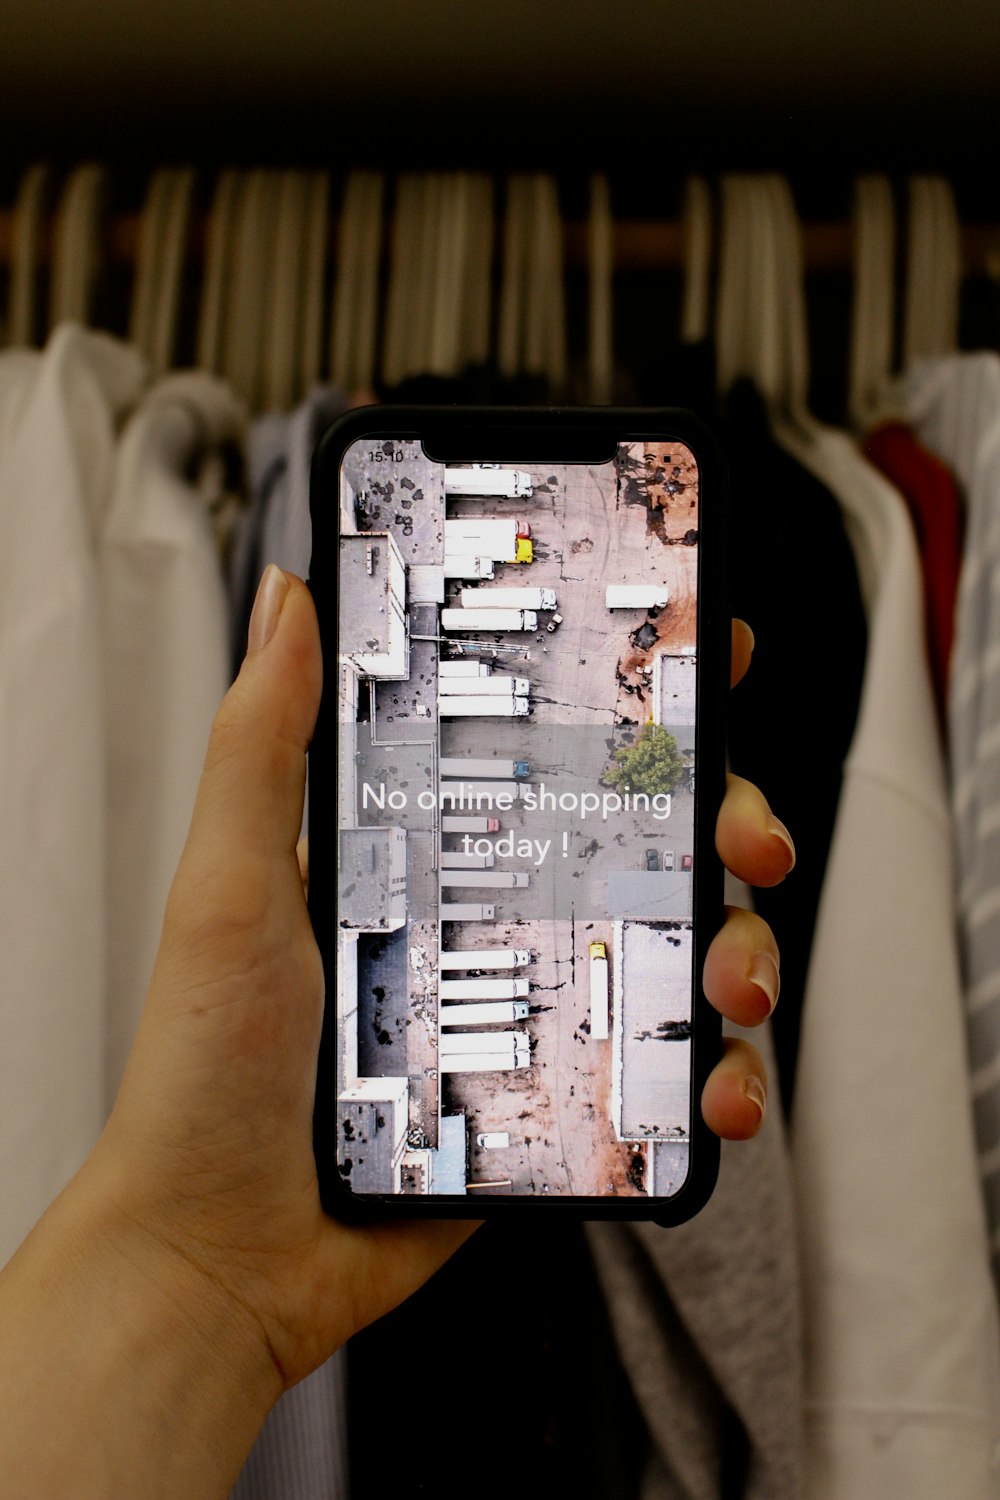 Una persona sosteniendo un teléfono celular frente a un estante de ropa